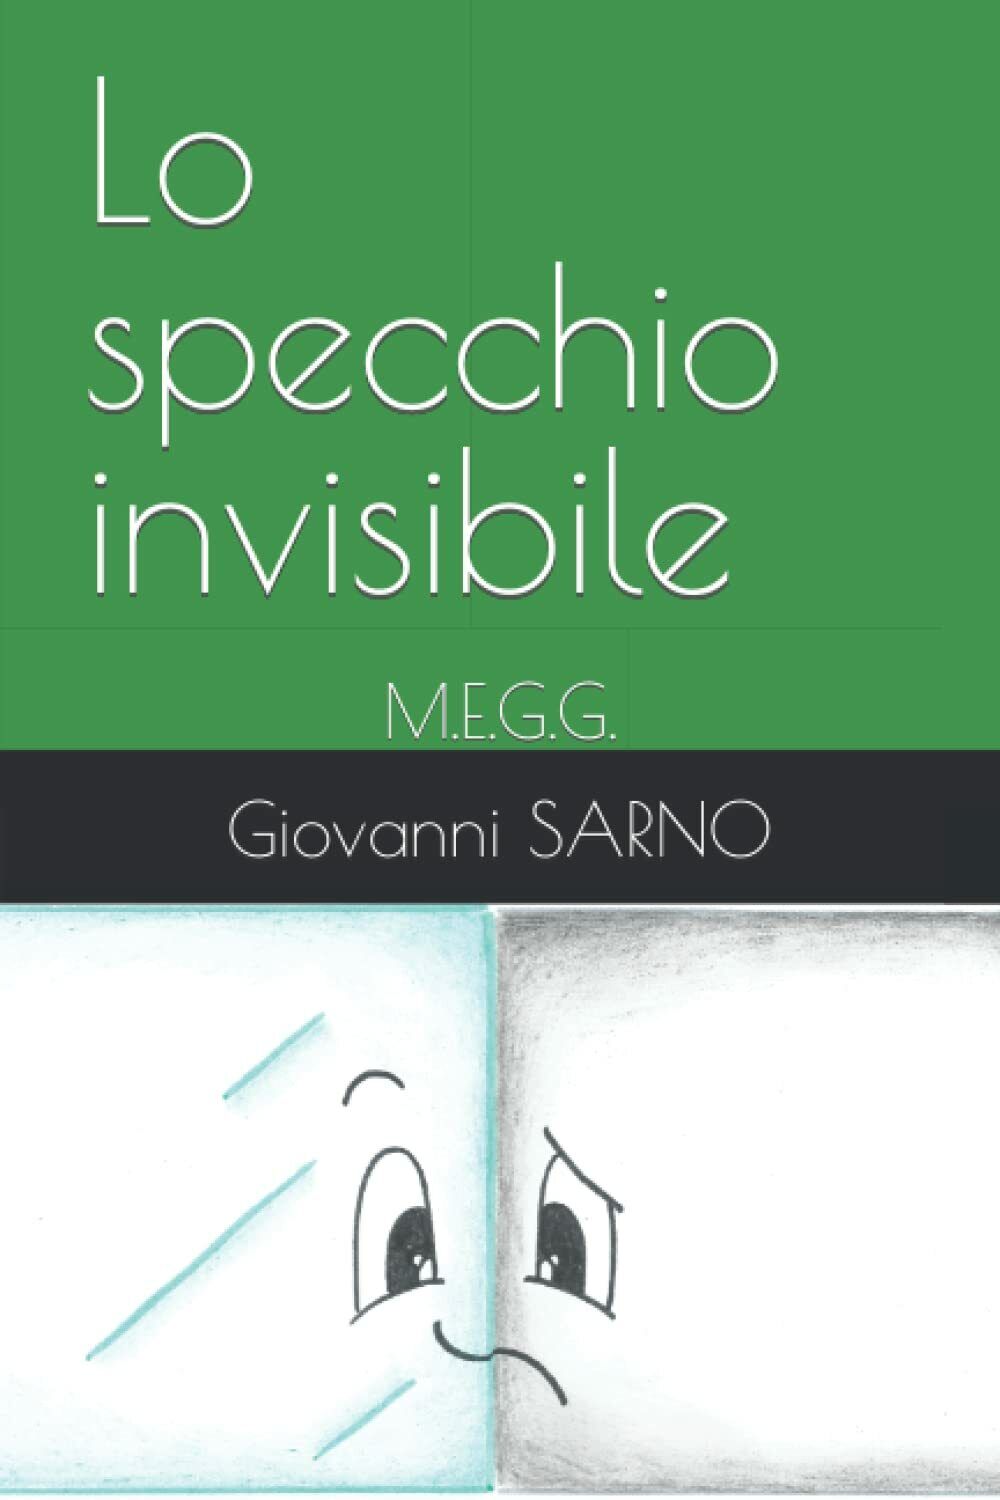 Lo specchio invisibile: M.E.G.G. di Giovanni Sarno, Margareth Romanelli,  2021, 